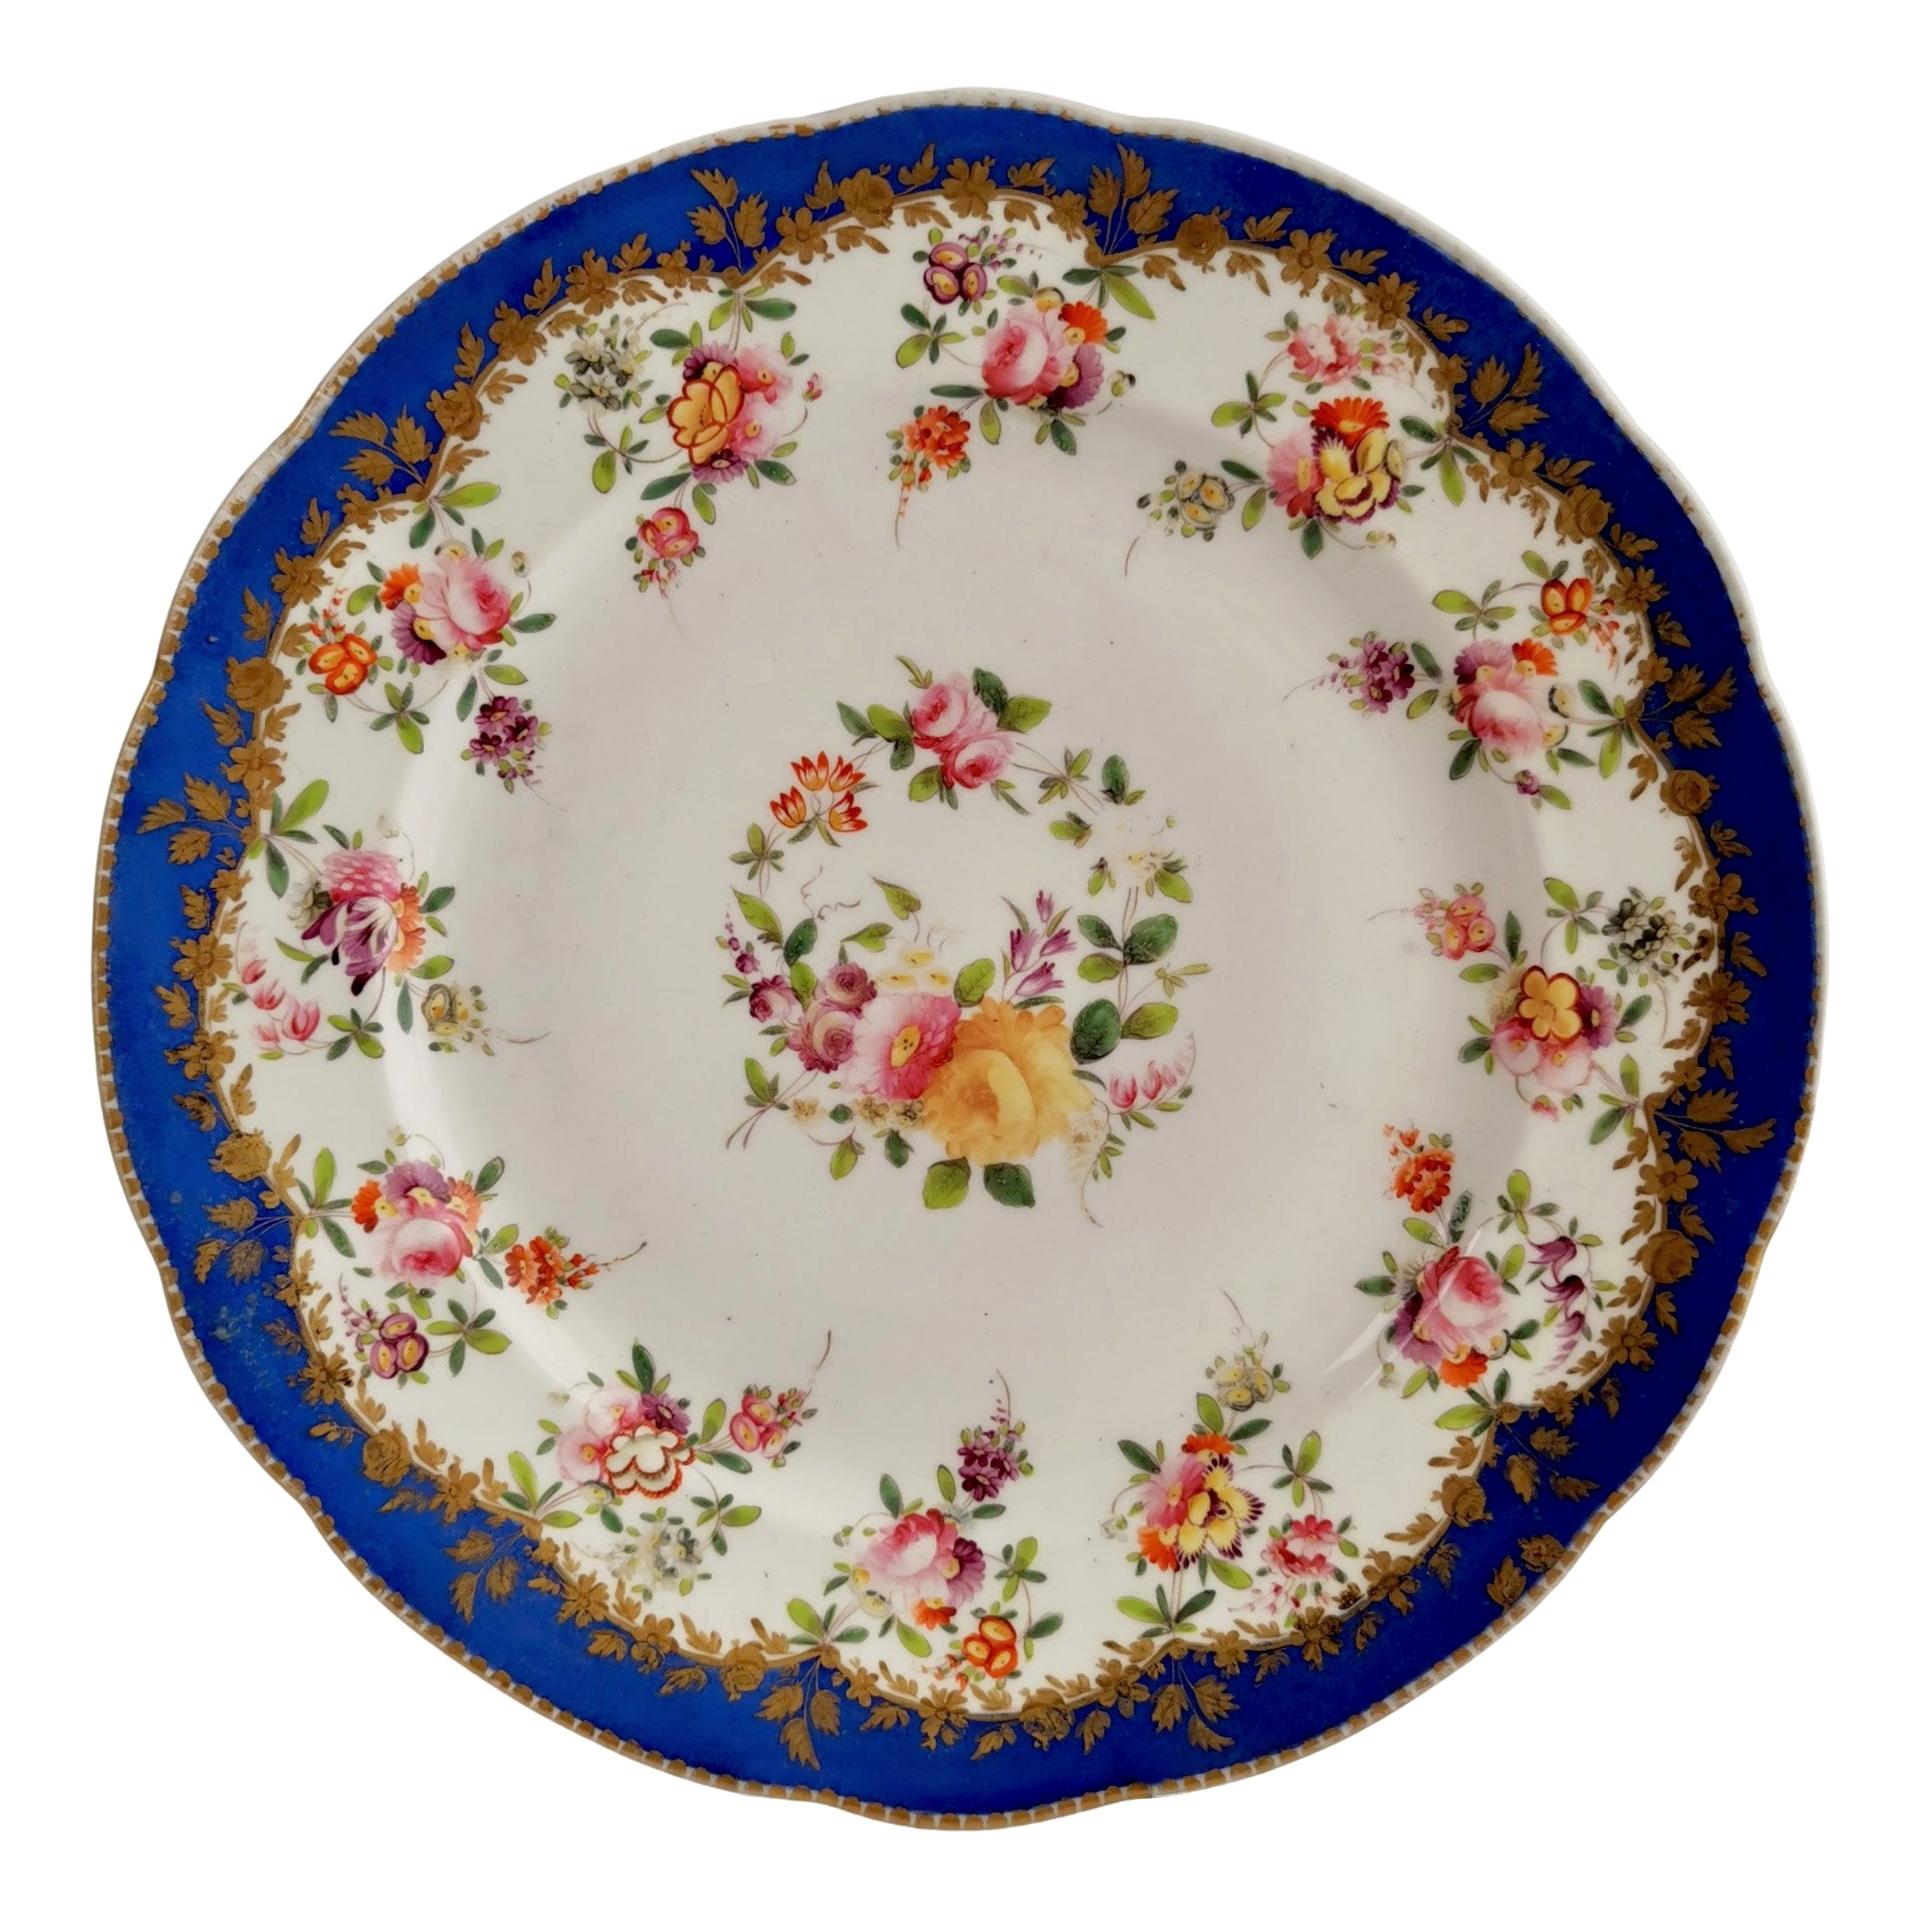 Coalport Porcelain Plate, Royal Blue with Flower Garlands, 1820-1825